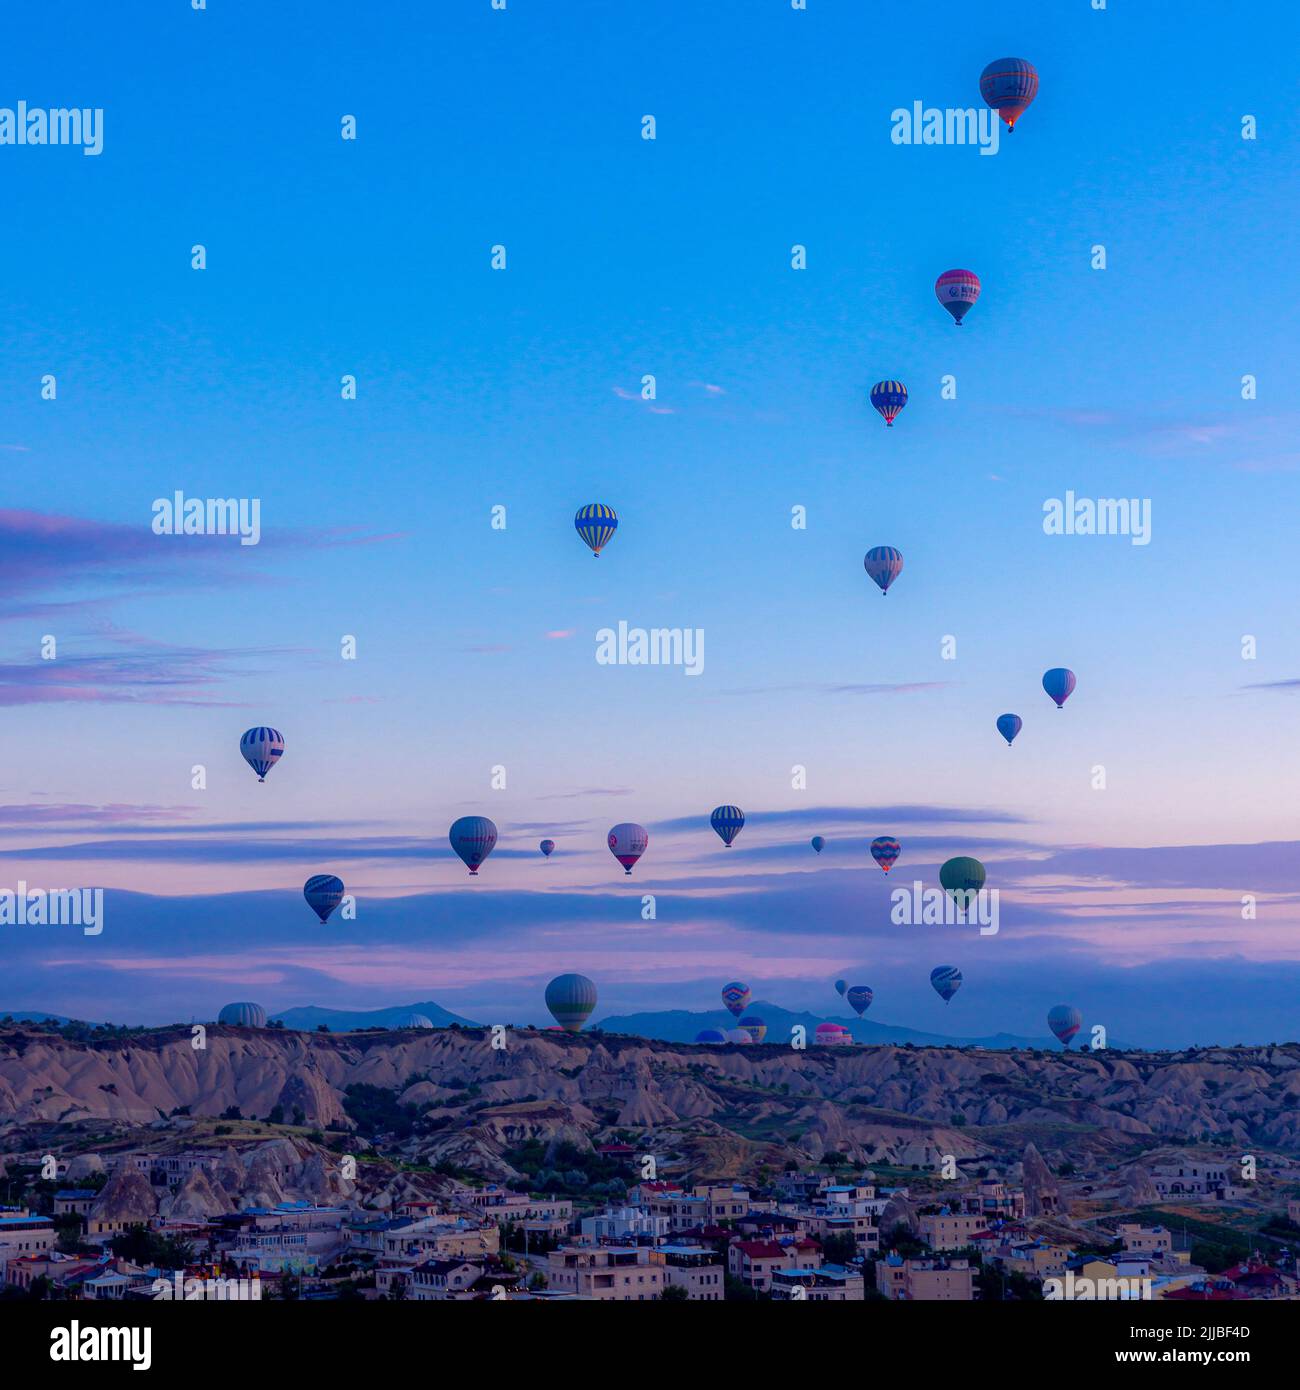 GOREME/TURQUÍA - 29 de junio de 2022: Docenas de globos de aire caliente despegan al amanecer para transportar a los turistas. Foto de stock